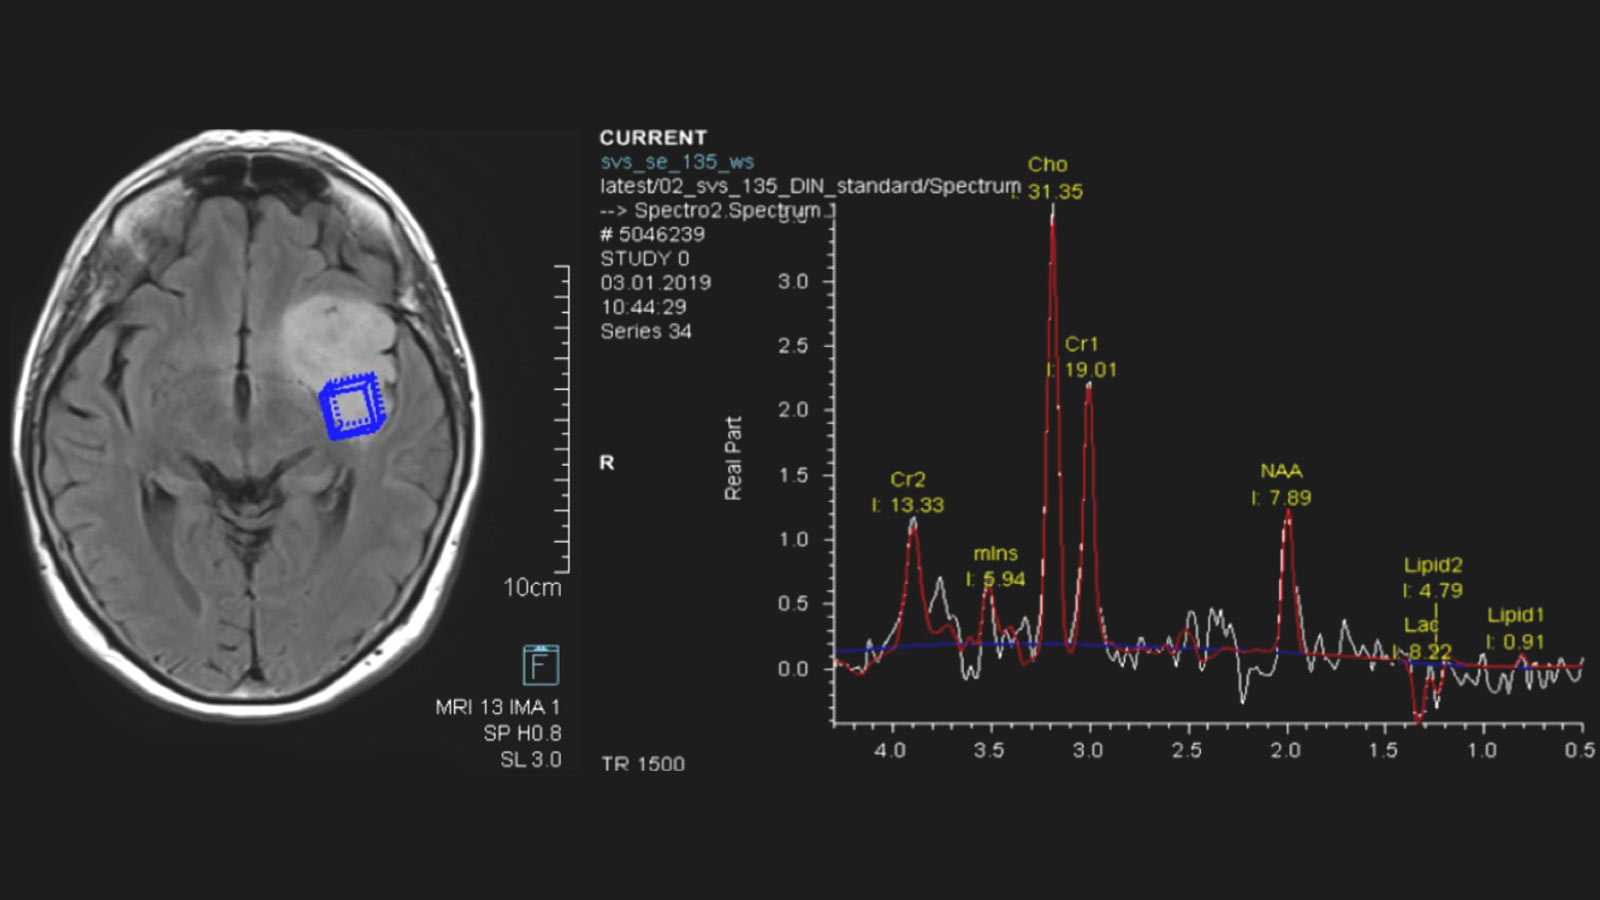 MR-Spektroskopie zeigt links Hirnschnitt mit hellem Tumor. Ein blaues Kästchen markiert erhöhte Konzentration von Metaboliten. Rechts Kurvendiagramm mit Werten der Metabolitenmessung.